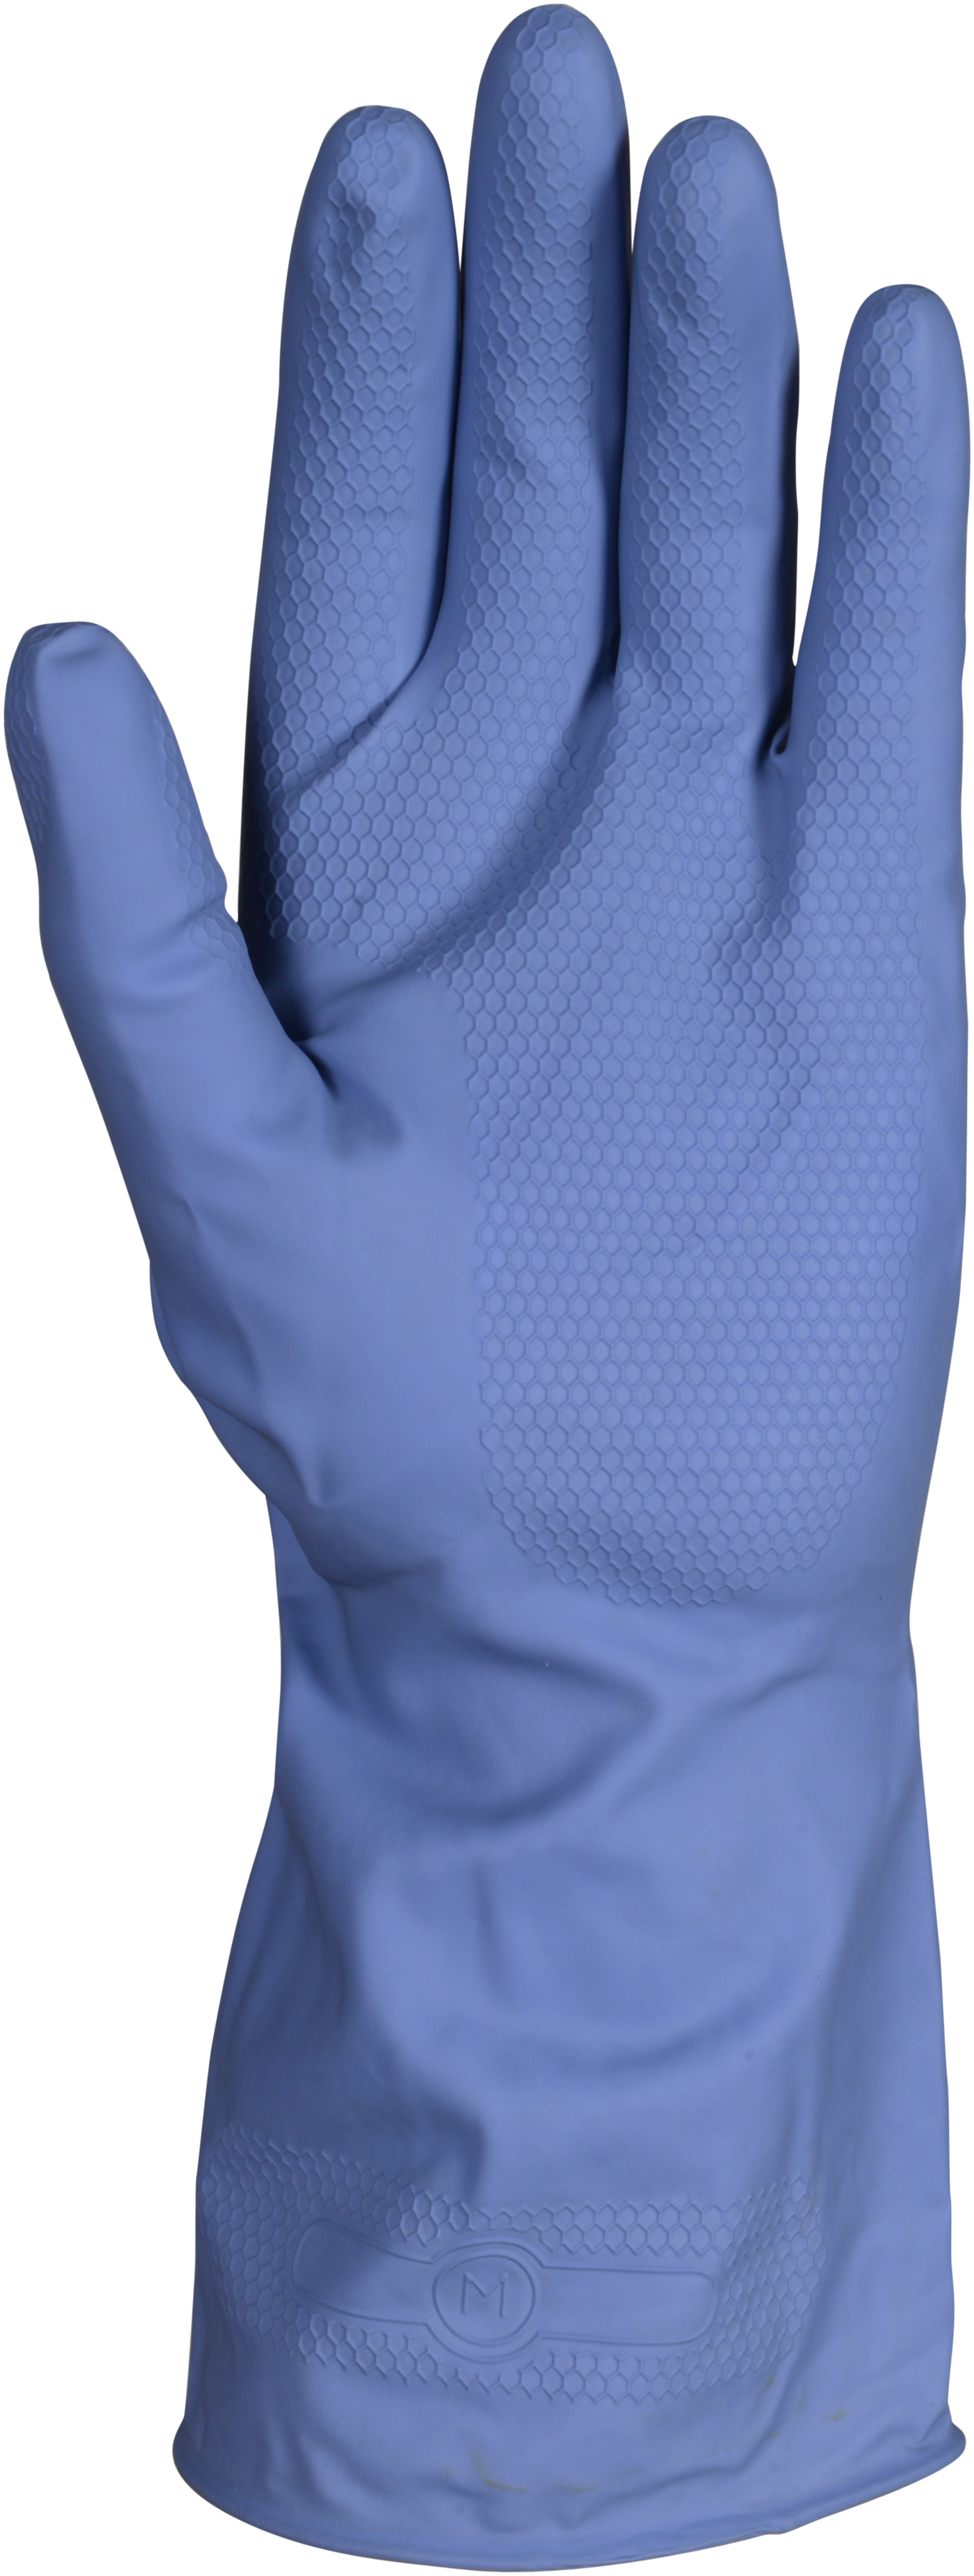 Handschuh Latex Multipurpose blau 